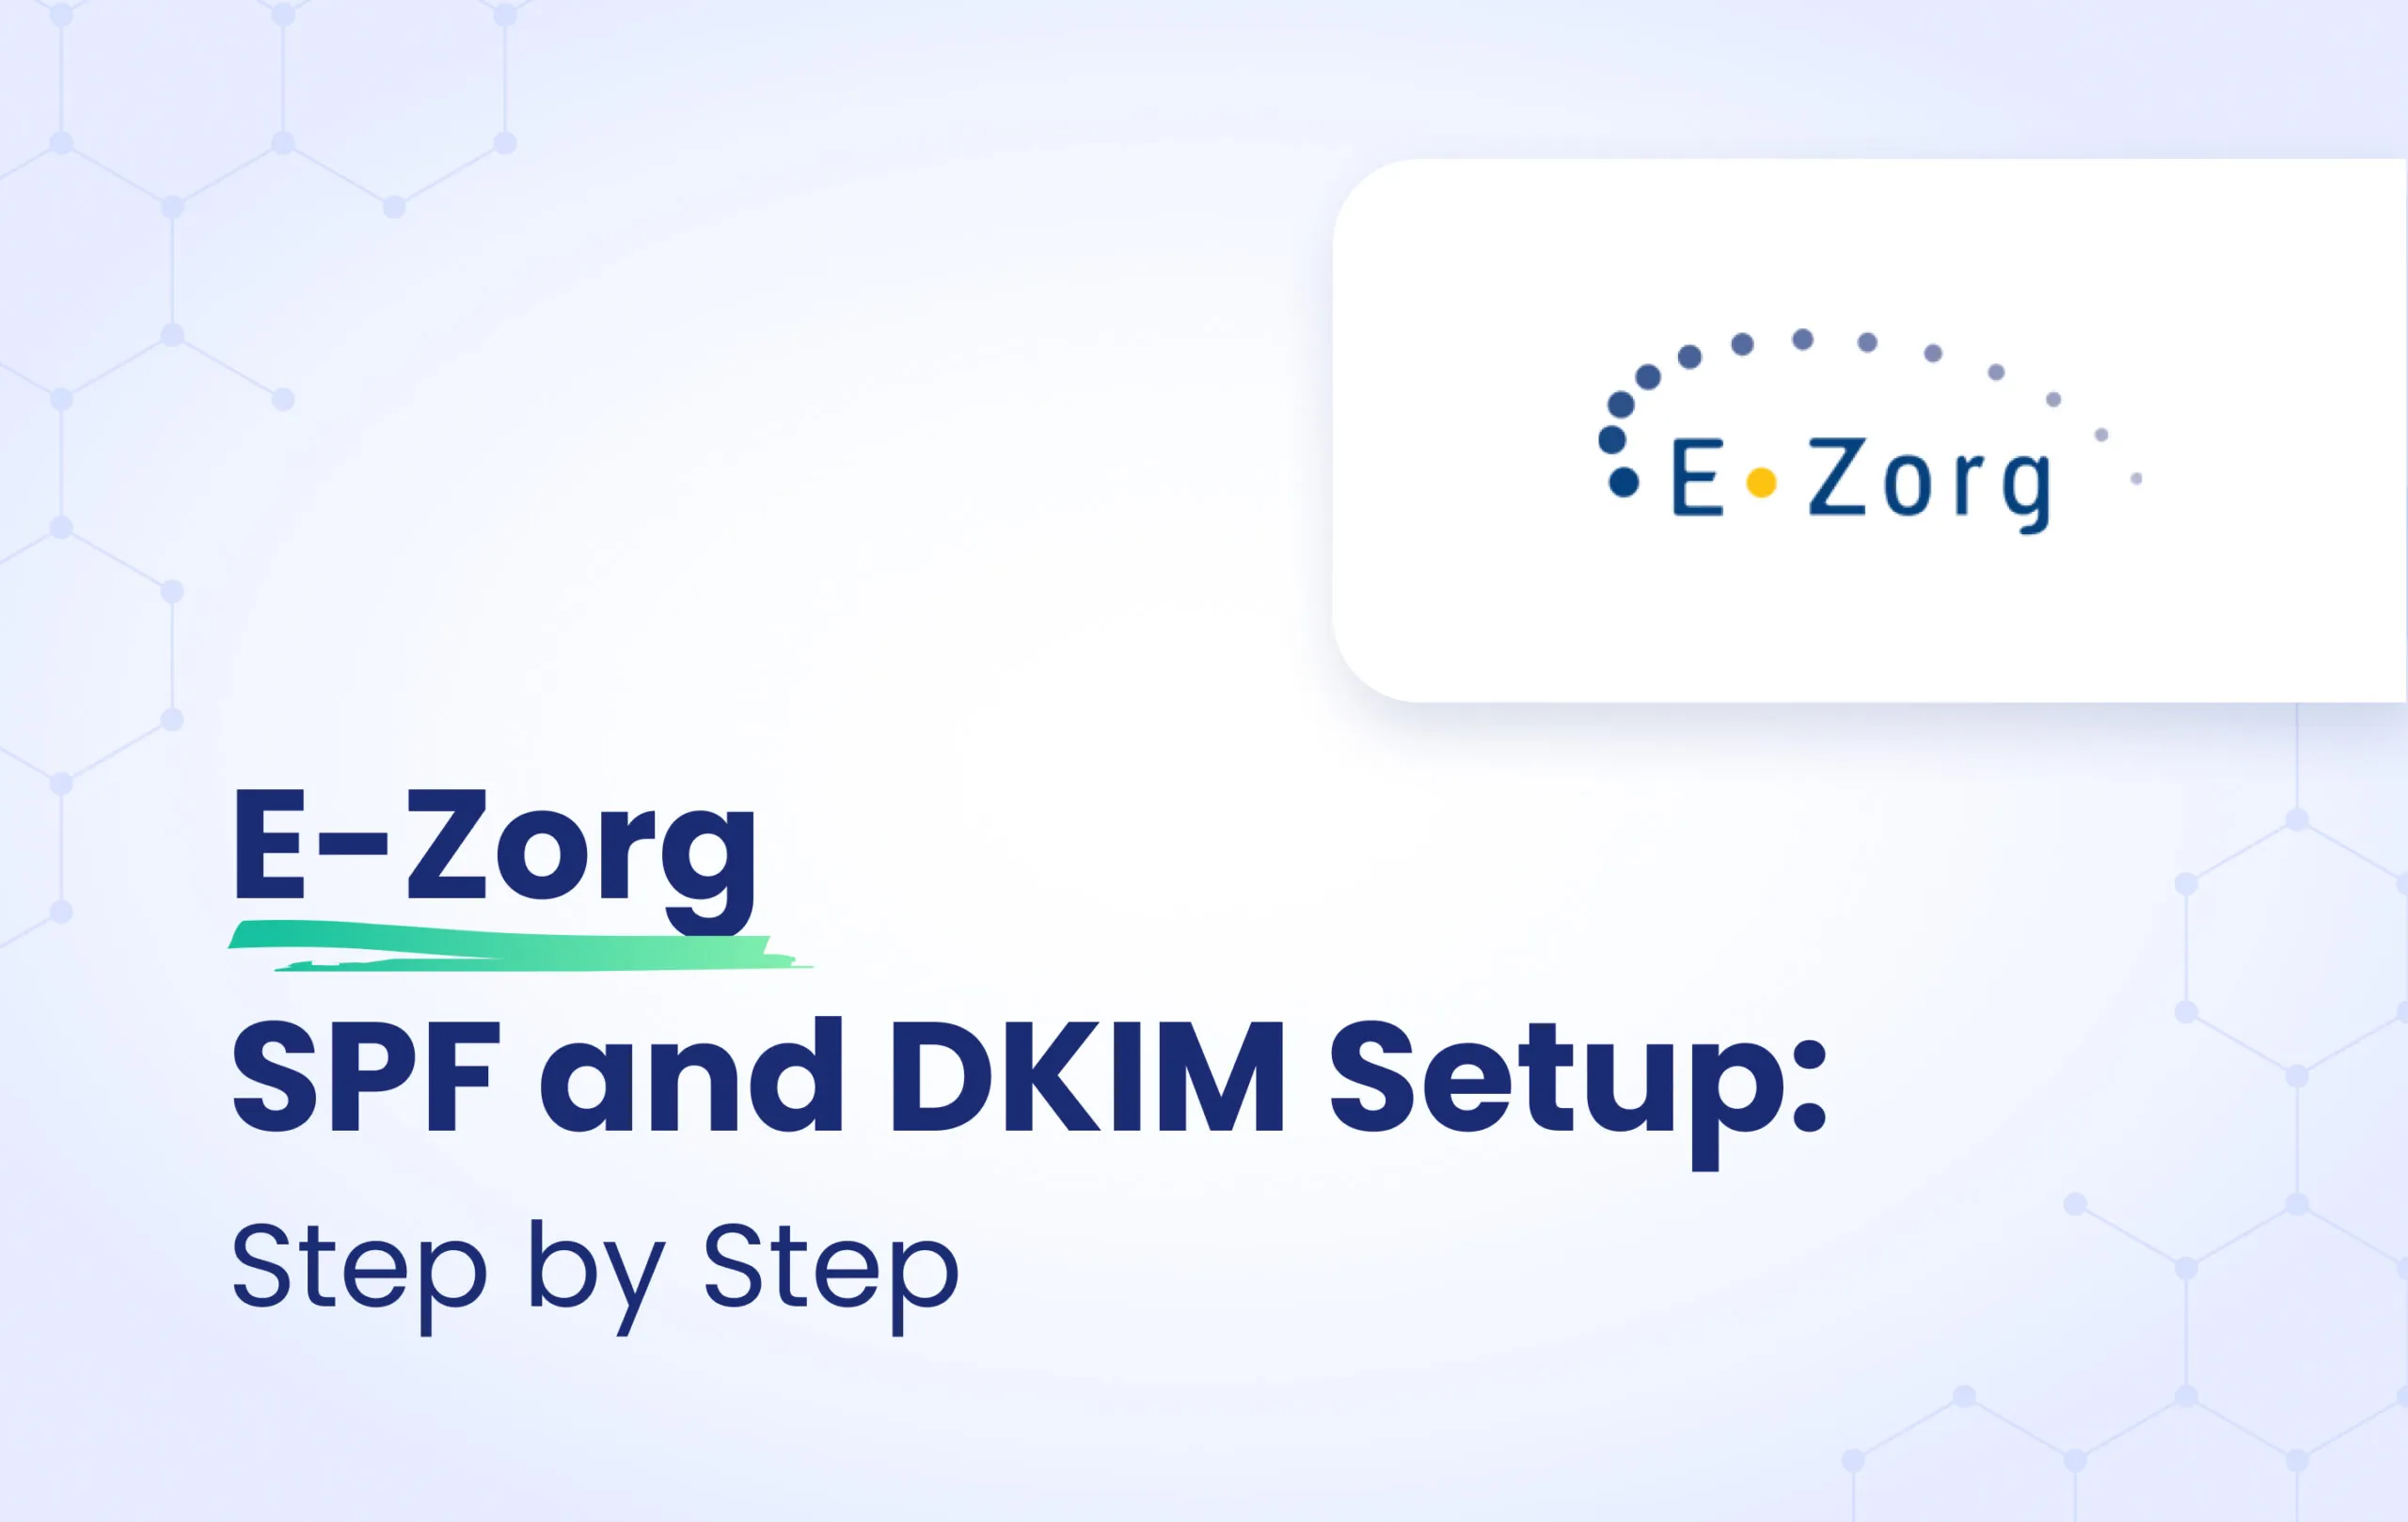 E-Zorg SPF and DKIM configuration